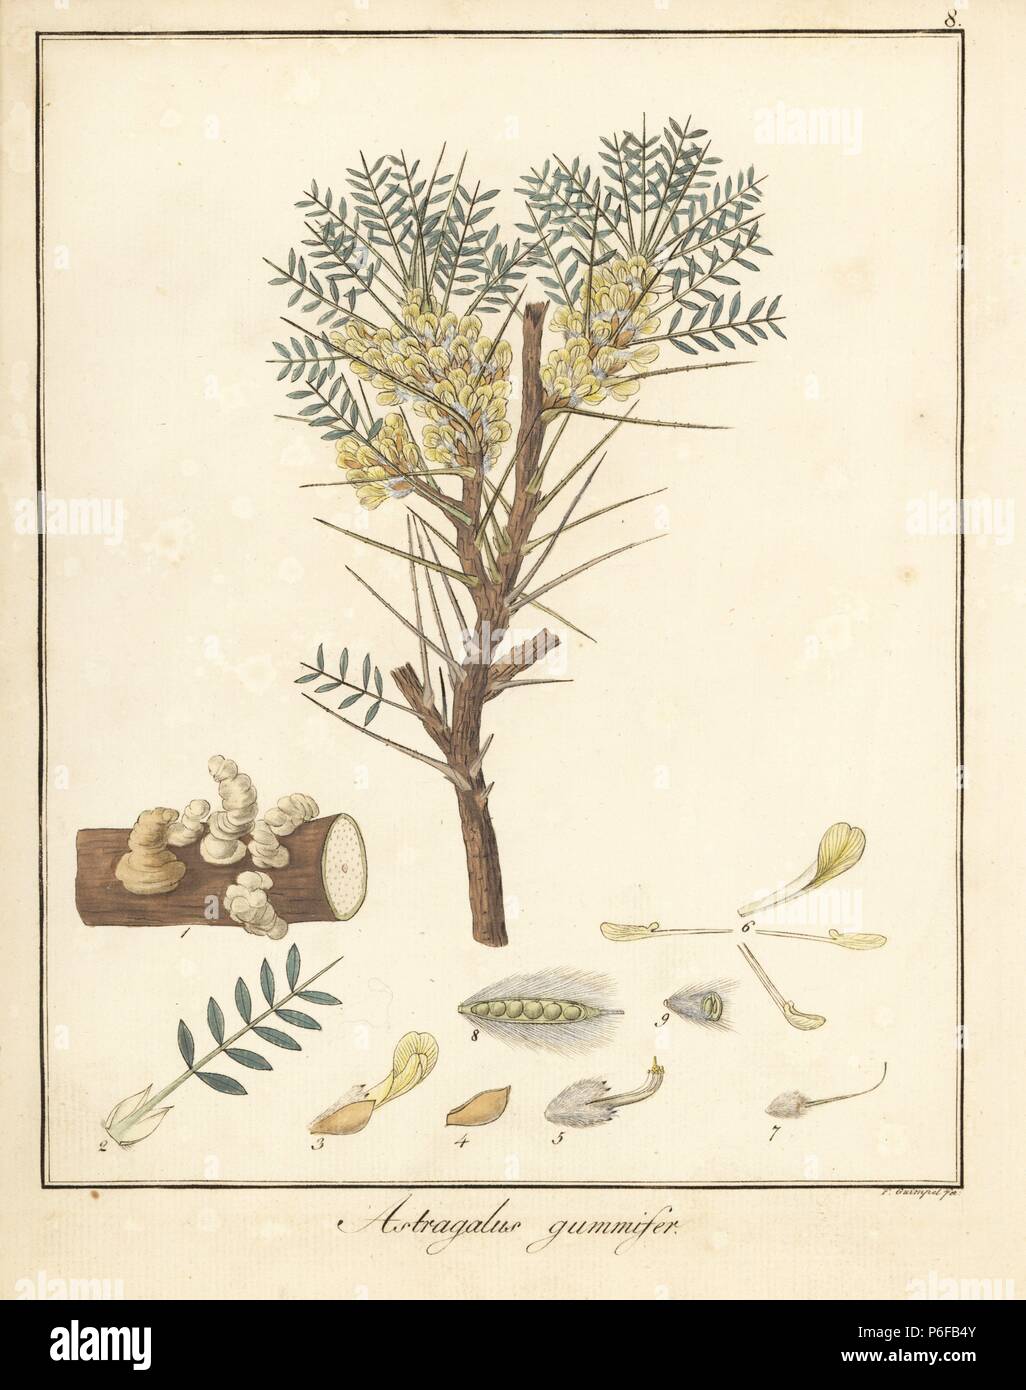 La gomma adragante tree, Astragalo gummifer. Handcolored incisione su rame di F. Guimpel dal Dr. Friedrich Gottlob Hayne Medical botanica, Berlino, 1822. Hayne (1763-1832) era un botanico tedesco, farmacista e Professore di botanica farmaceutica presso l'Università di Berlino. Foto Stock